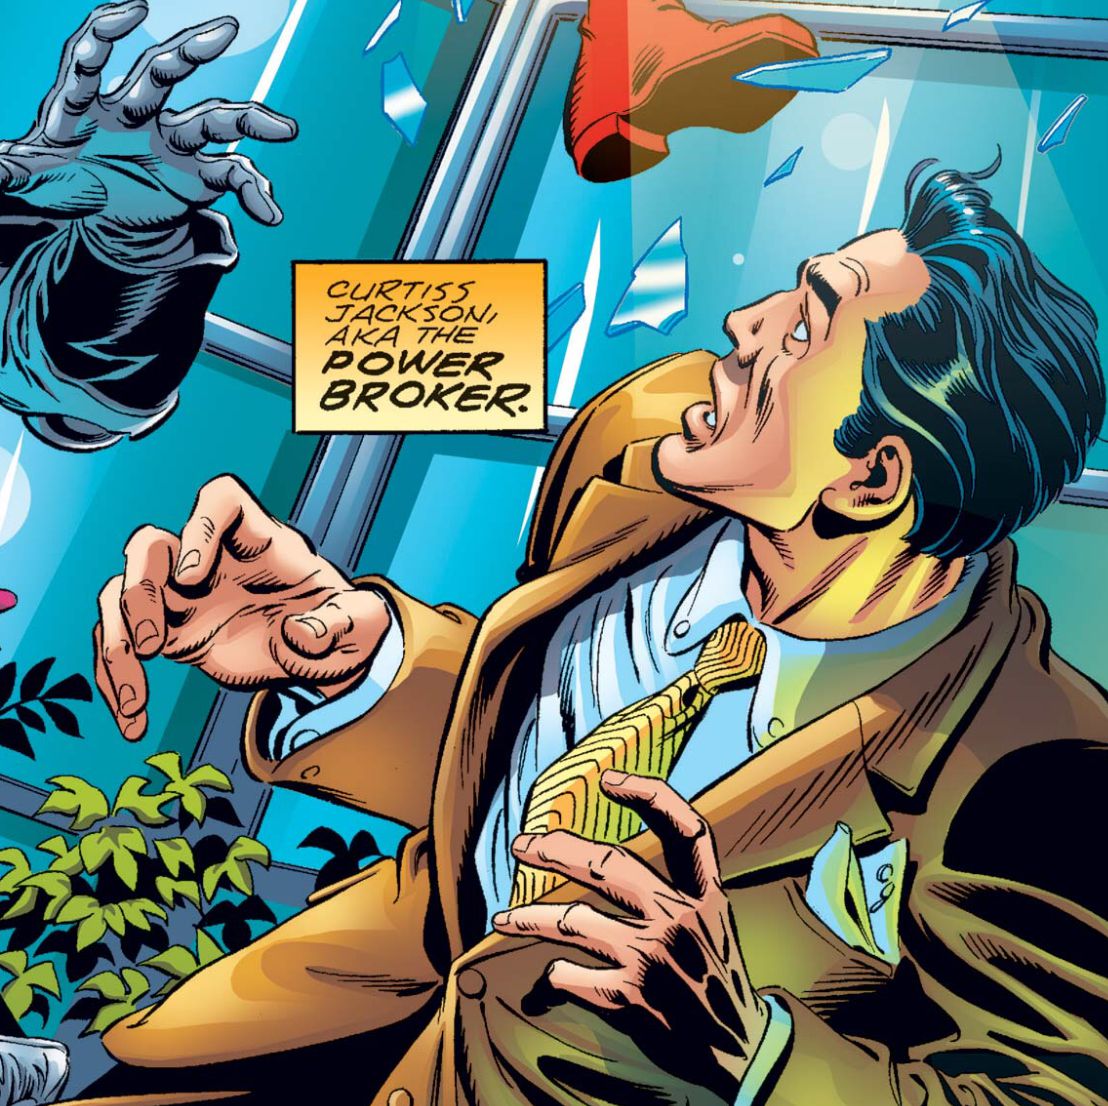 Curtiss Jackson, AKA the Power Broker, un ragazzo bianco in giacca e cravatta, si nasconde da una finestra sfondata nell'agente statunitense n. 3, Marvel Comics (2001). 